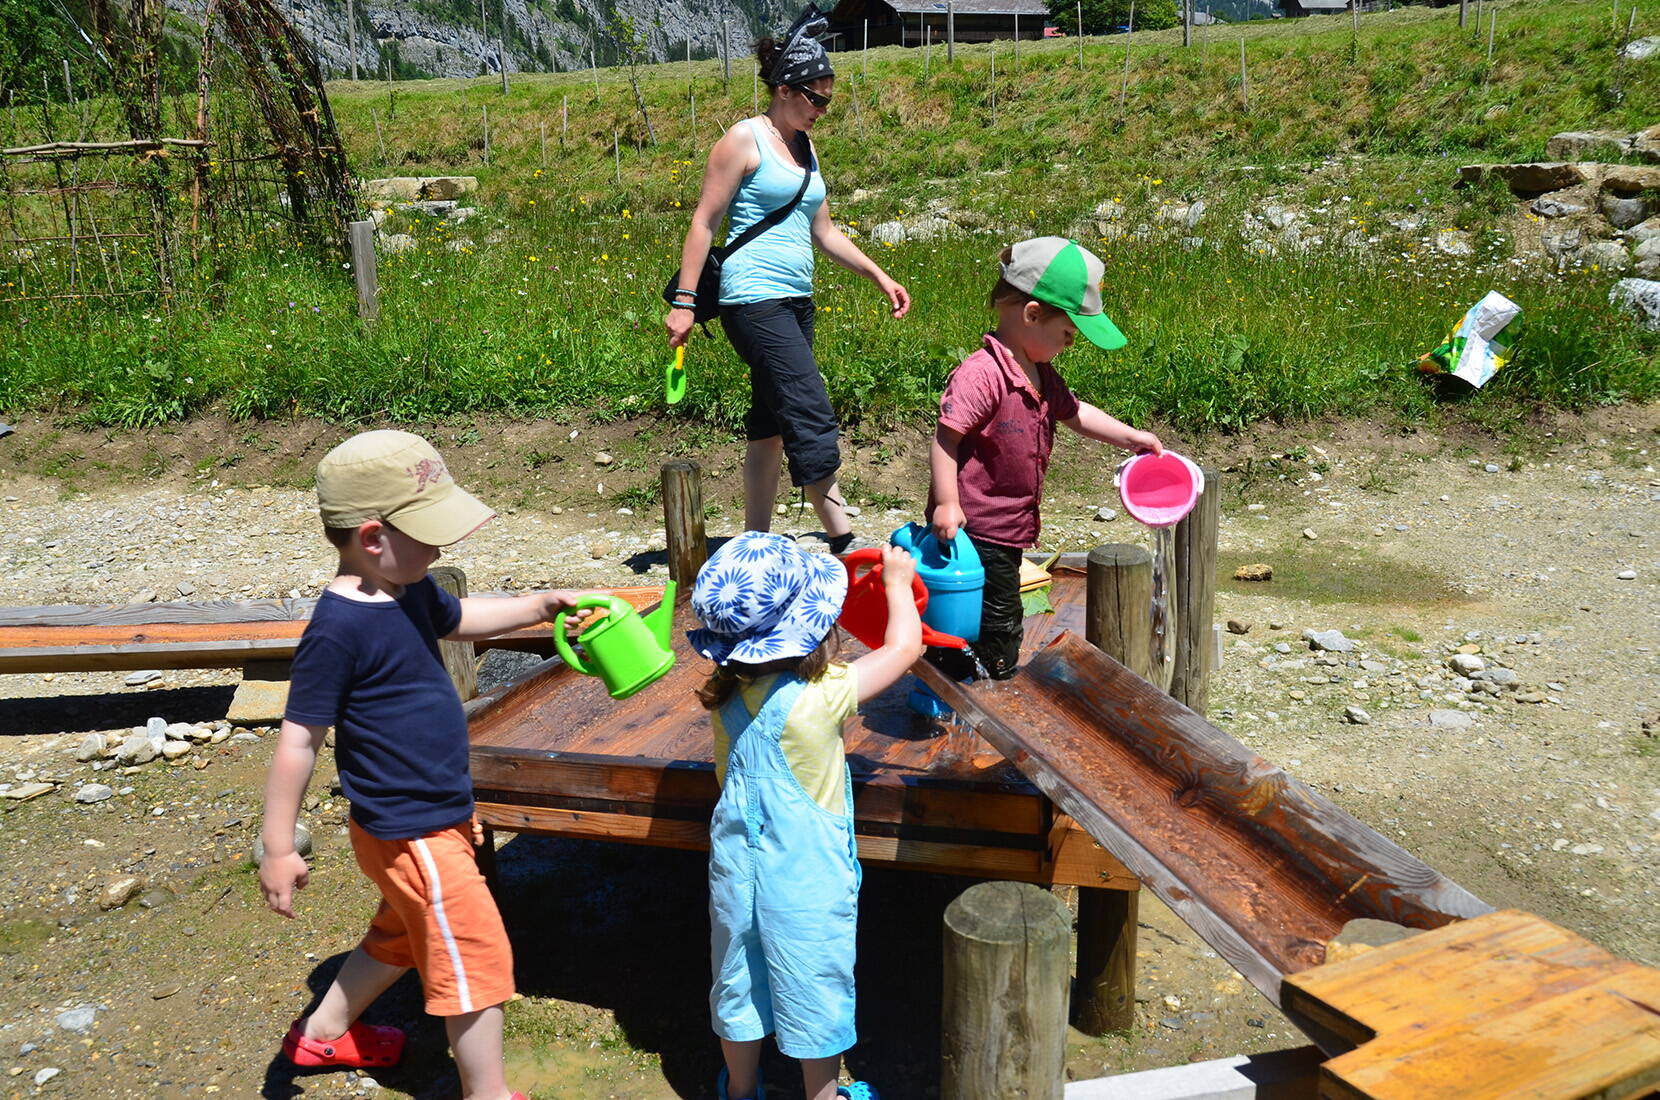 Escursione per famiglie al parco giochi acquatico «Gwunderwasser» di Diemtigen. Qui i bambini possono sperimentare le dinamiche naturali dell'acqua, deviando i corsi d'acqua, trattenendoli e rilasciandoli.